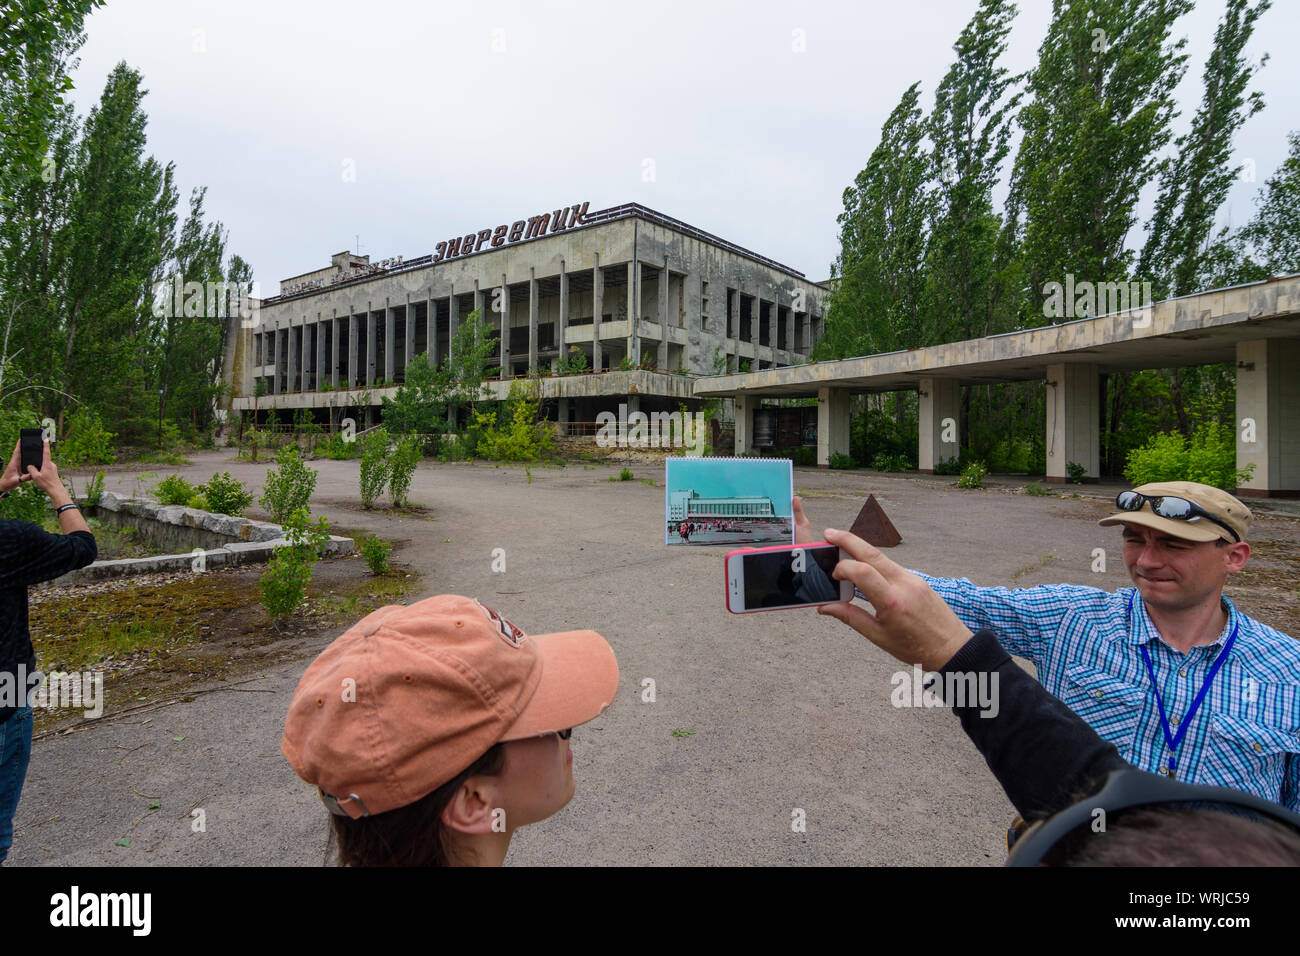 Pripyat (Prypiat): abandonó el Palacio de la cultura Energetik, guía muestra imagen de aspecto original en Chernobyl (zona de exclusión de Chernobyl), Kiev Oblast, UKR Foto de stock